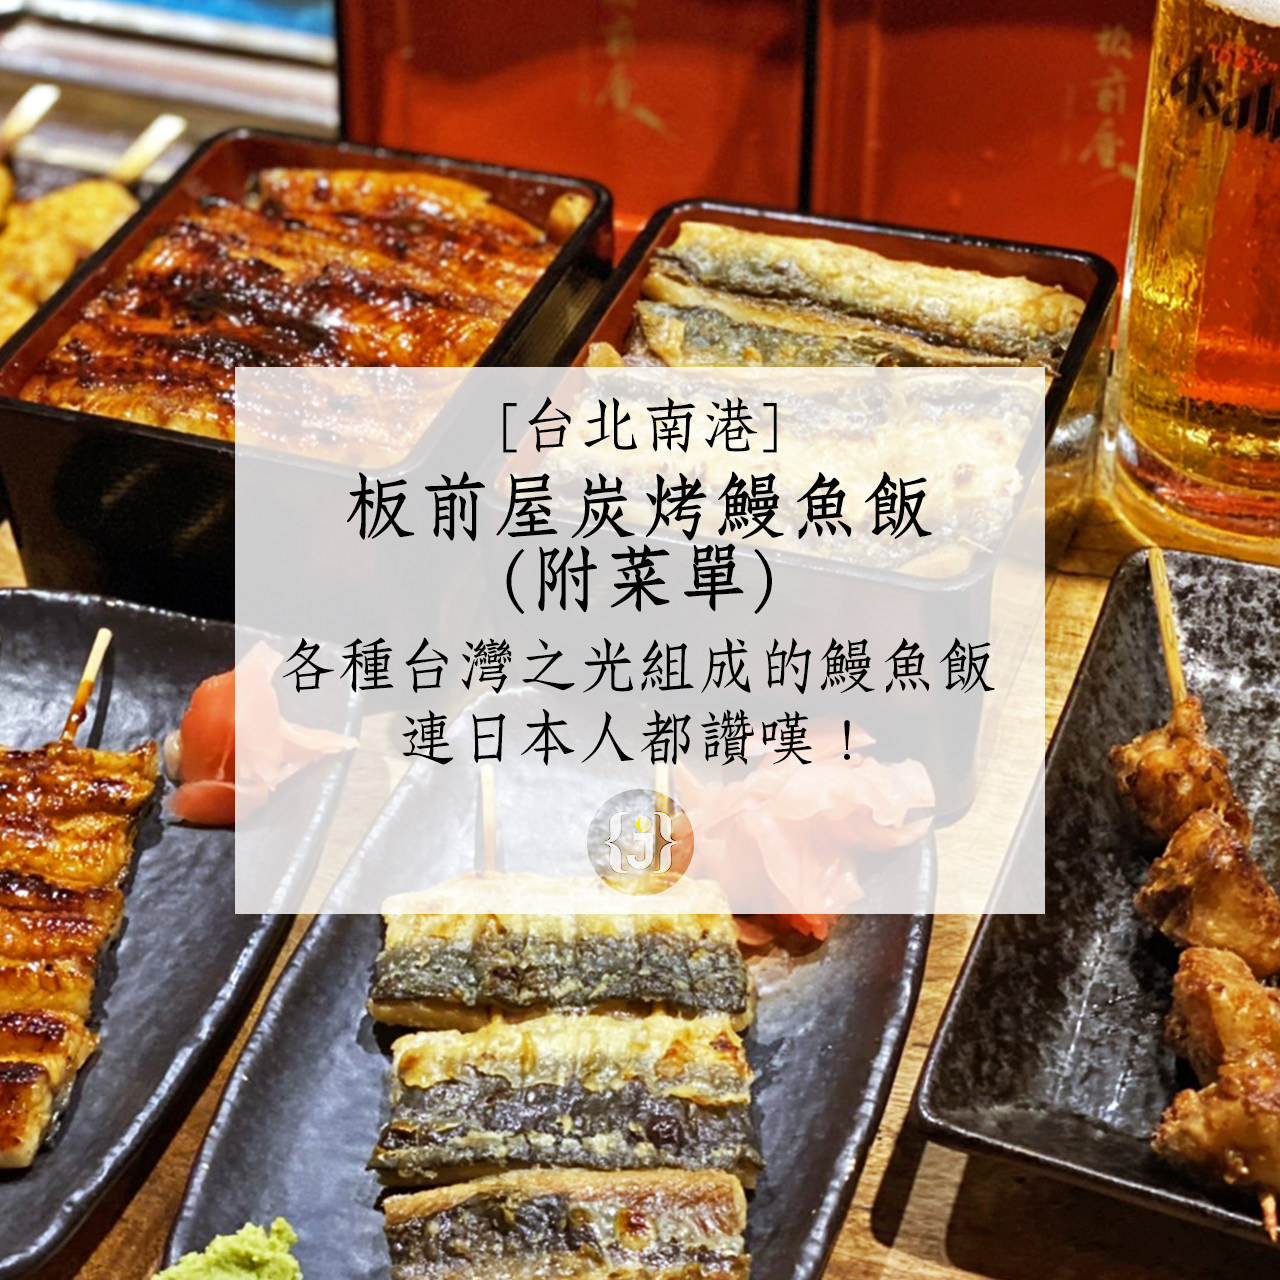 【台北南港】板前屋炭烤鰻魚飯附菜單各種「台灣之光」組成的鰻魚飯 連日本人都讚嘆！ 1